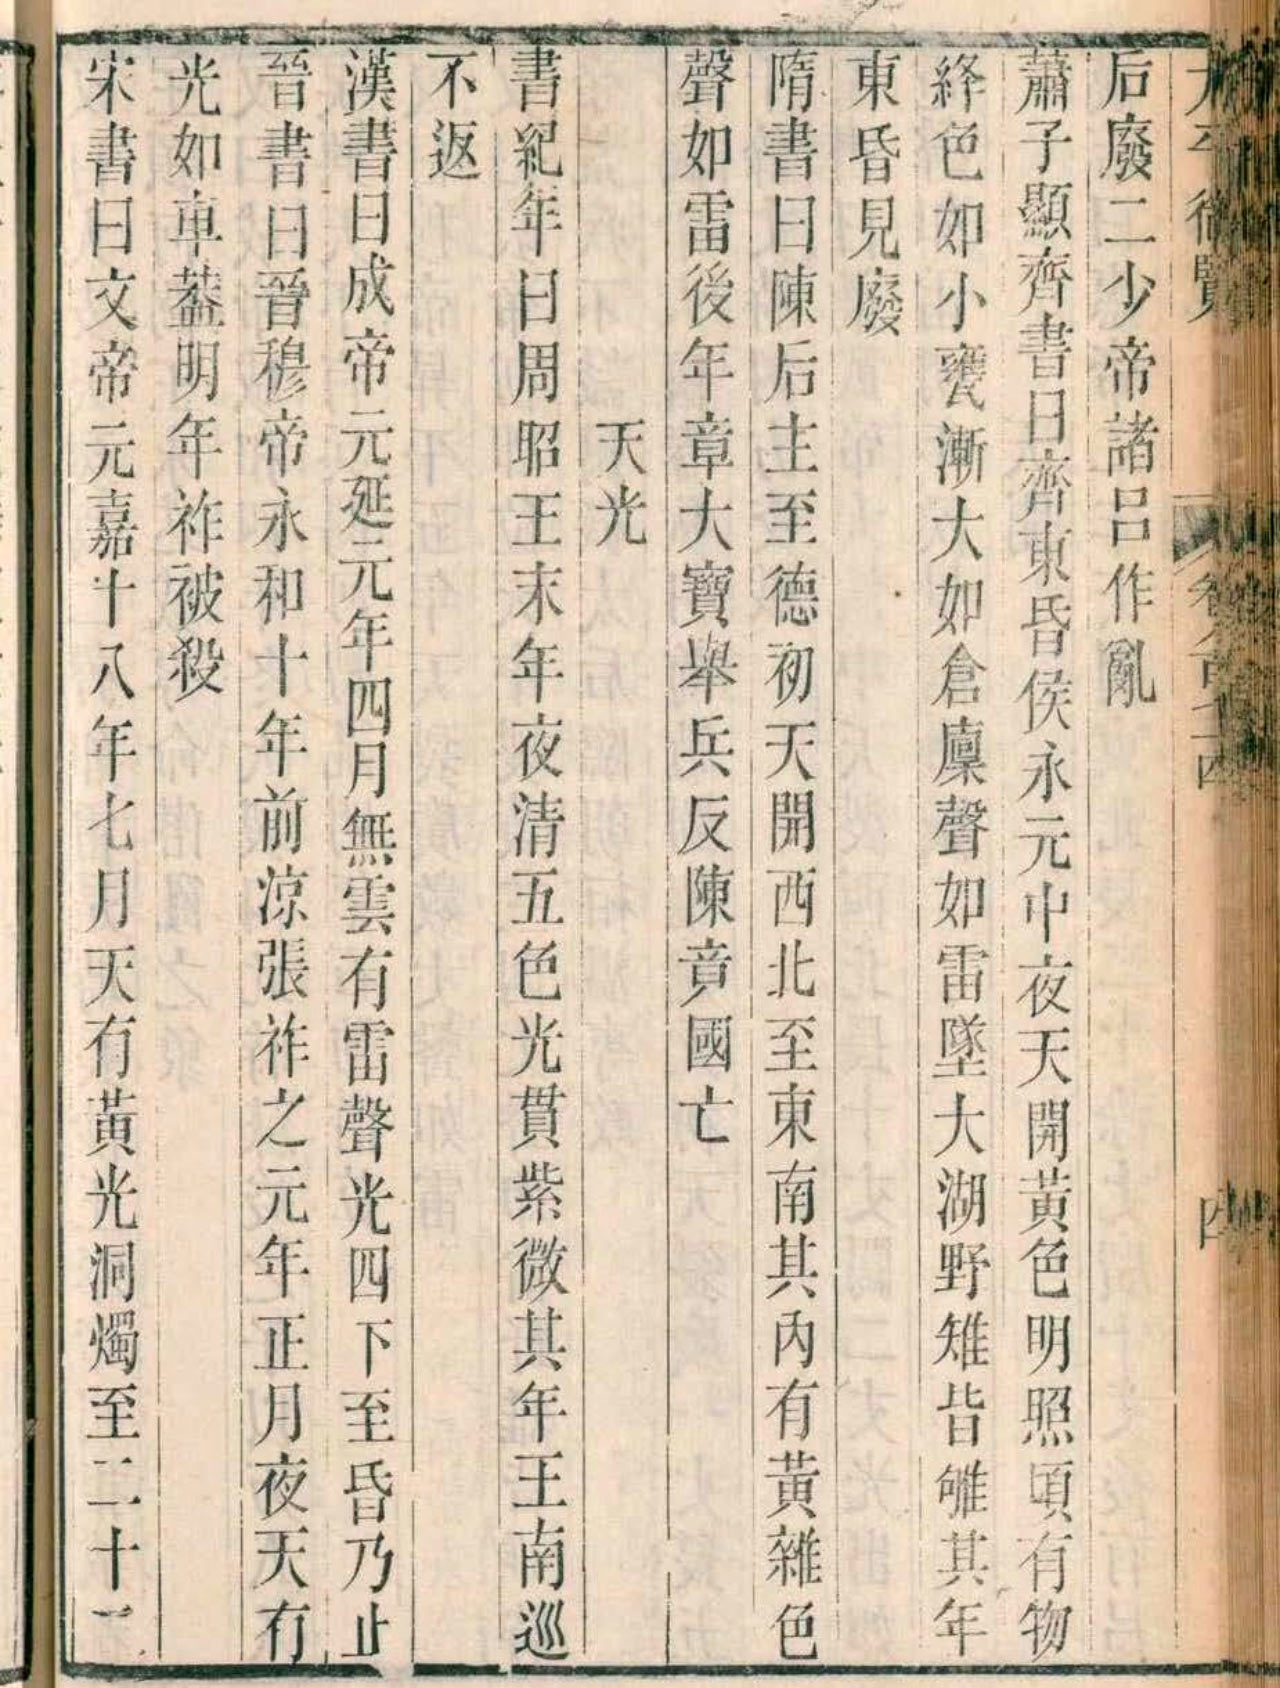 《空间研究进展》：中国古代文献中提到的天体事件可能是世界上已知最早的极光纪录